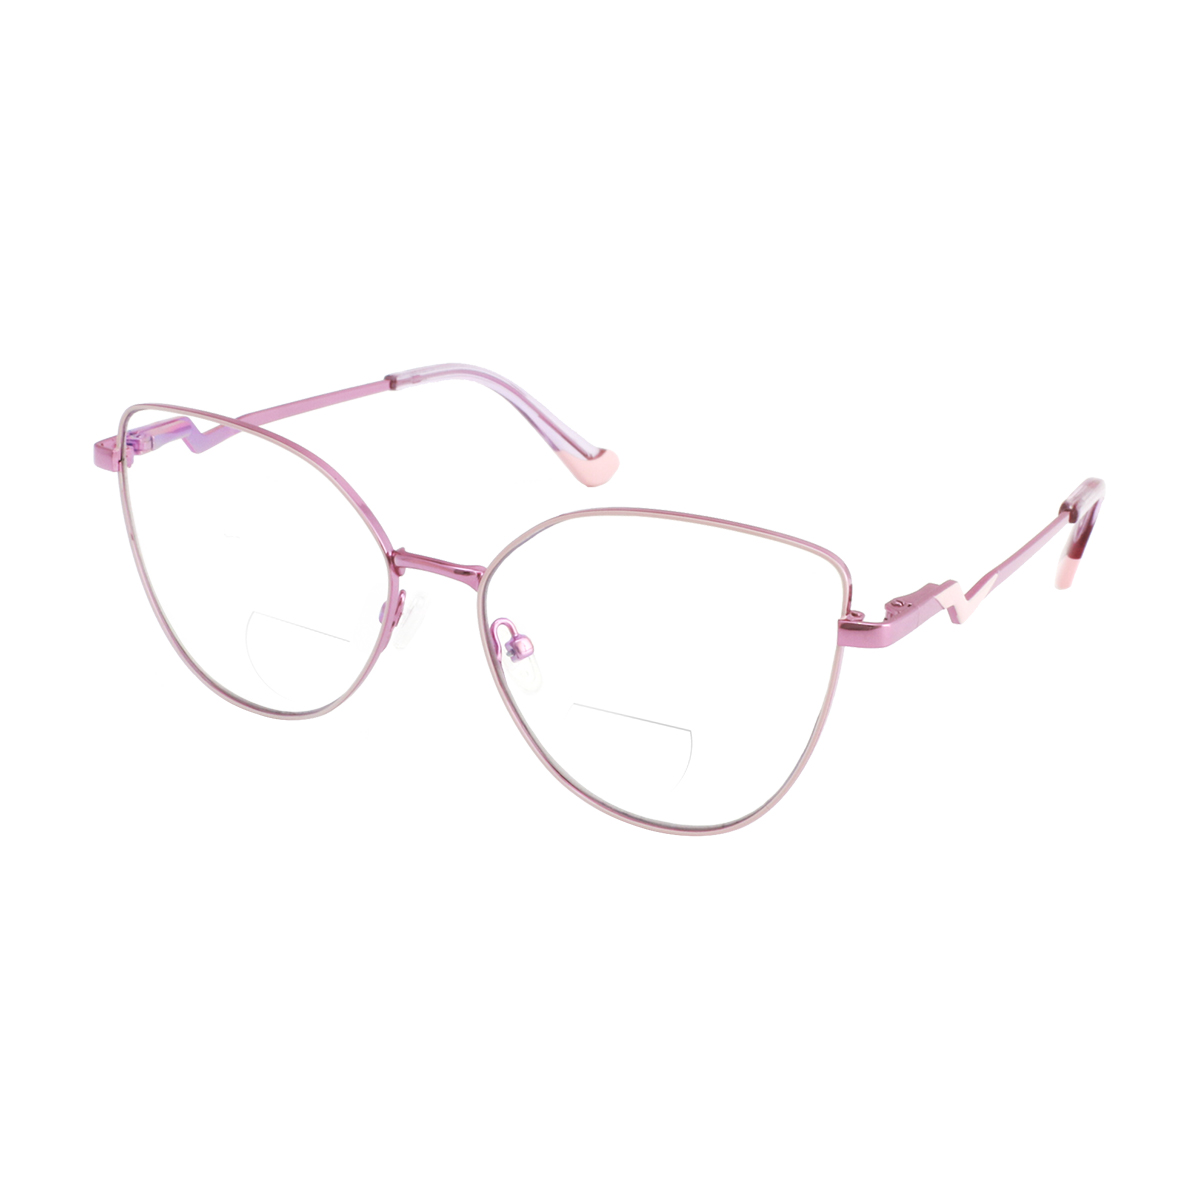 Europe - Cat-eye Pink Reading Glasses for Women